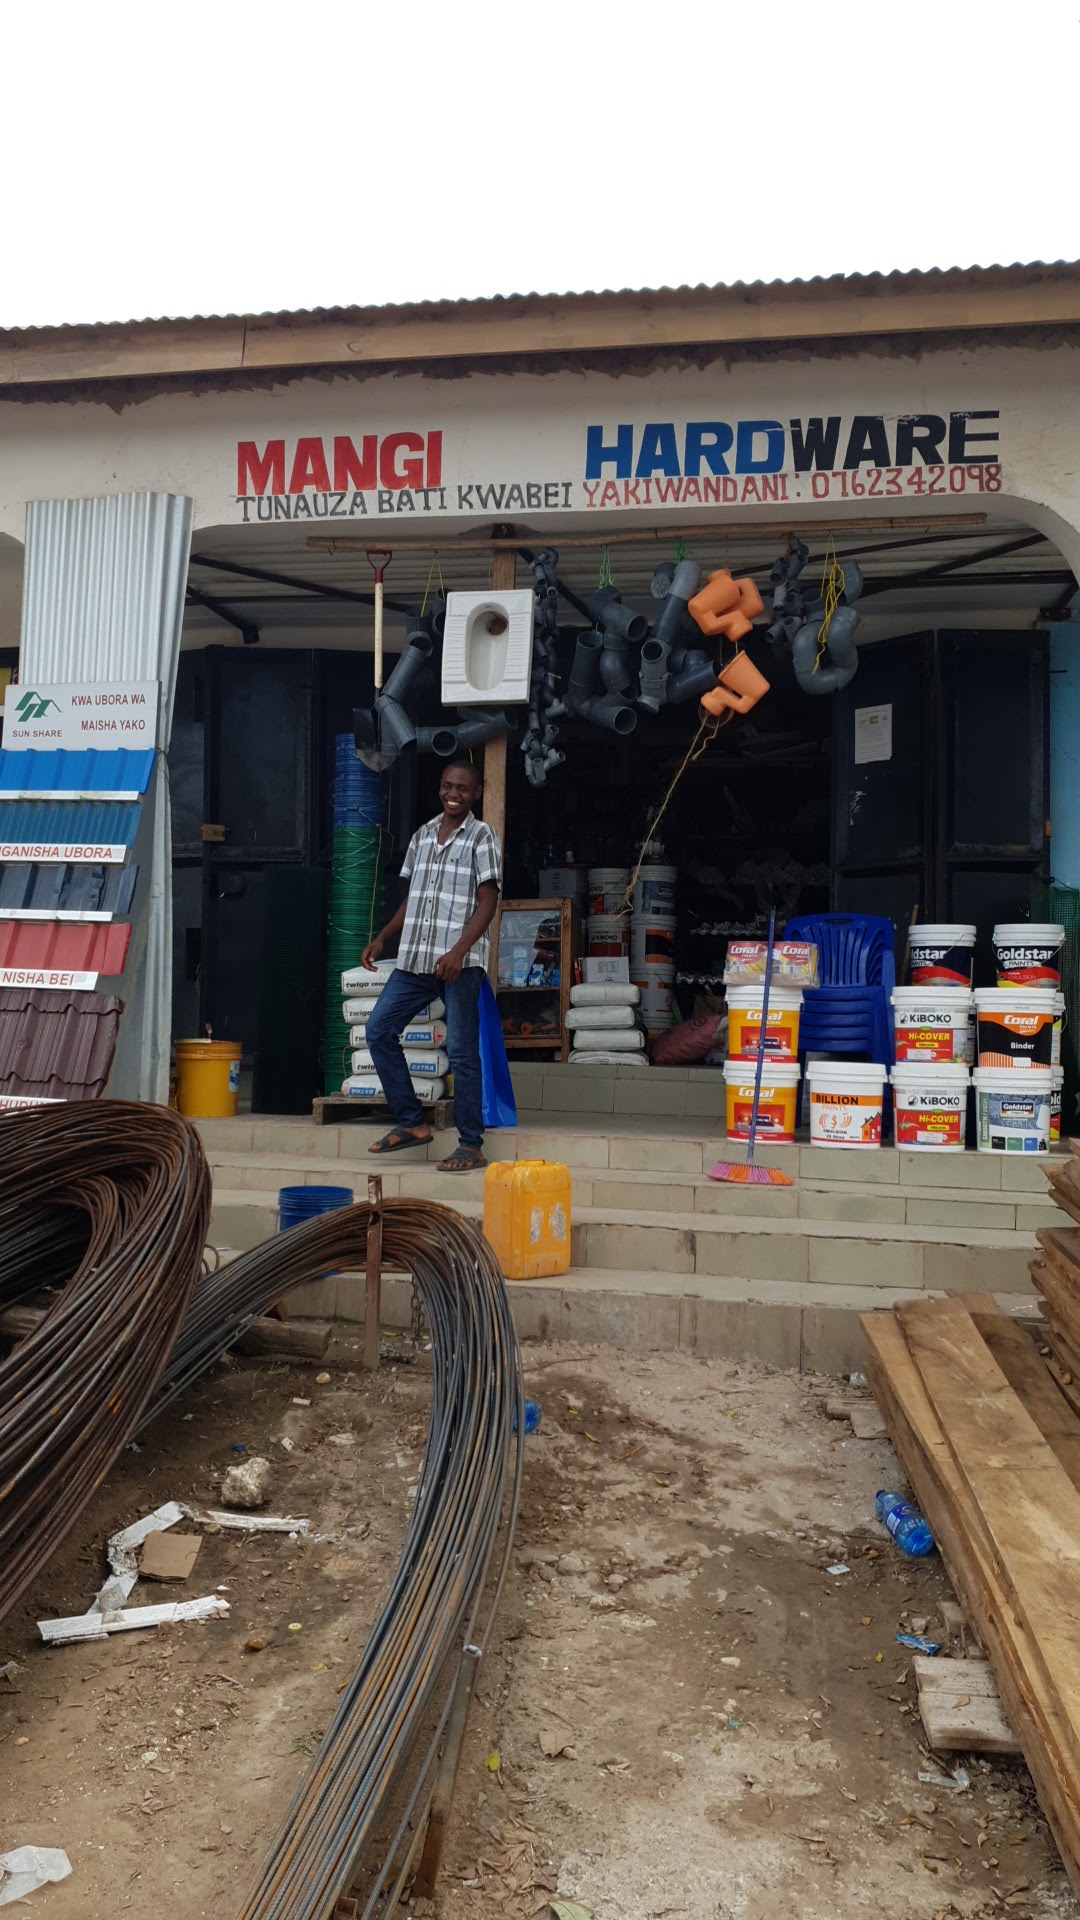 Mangi Hardware